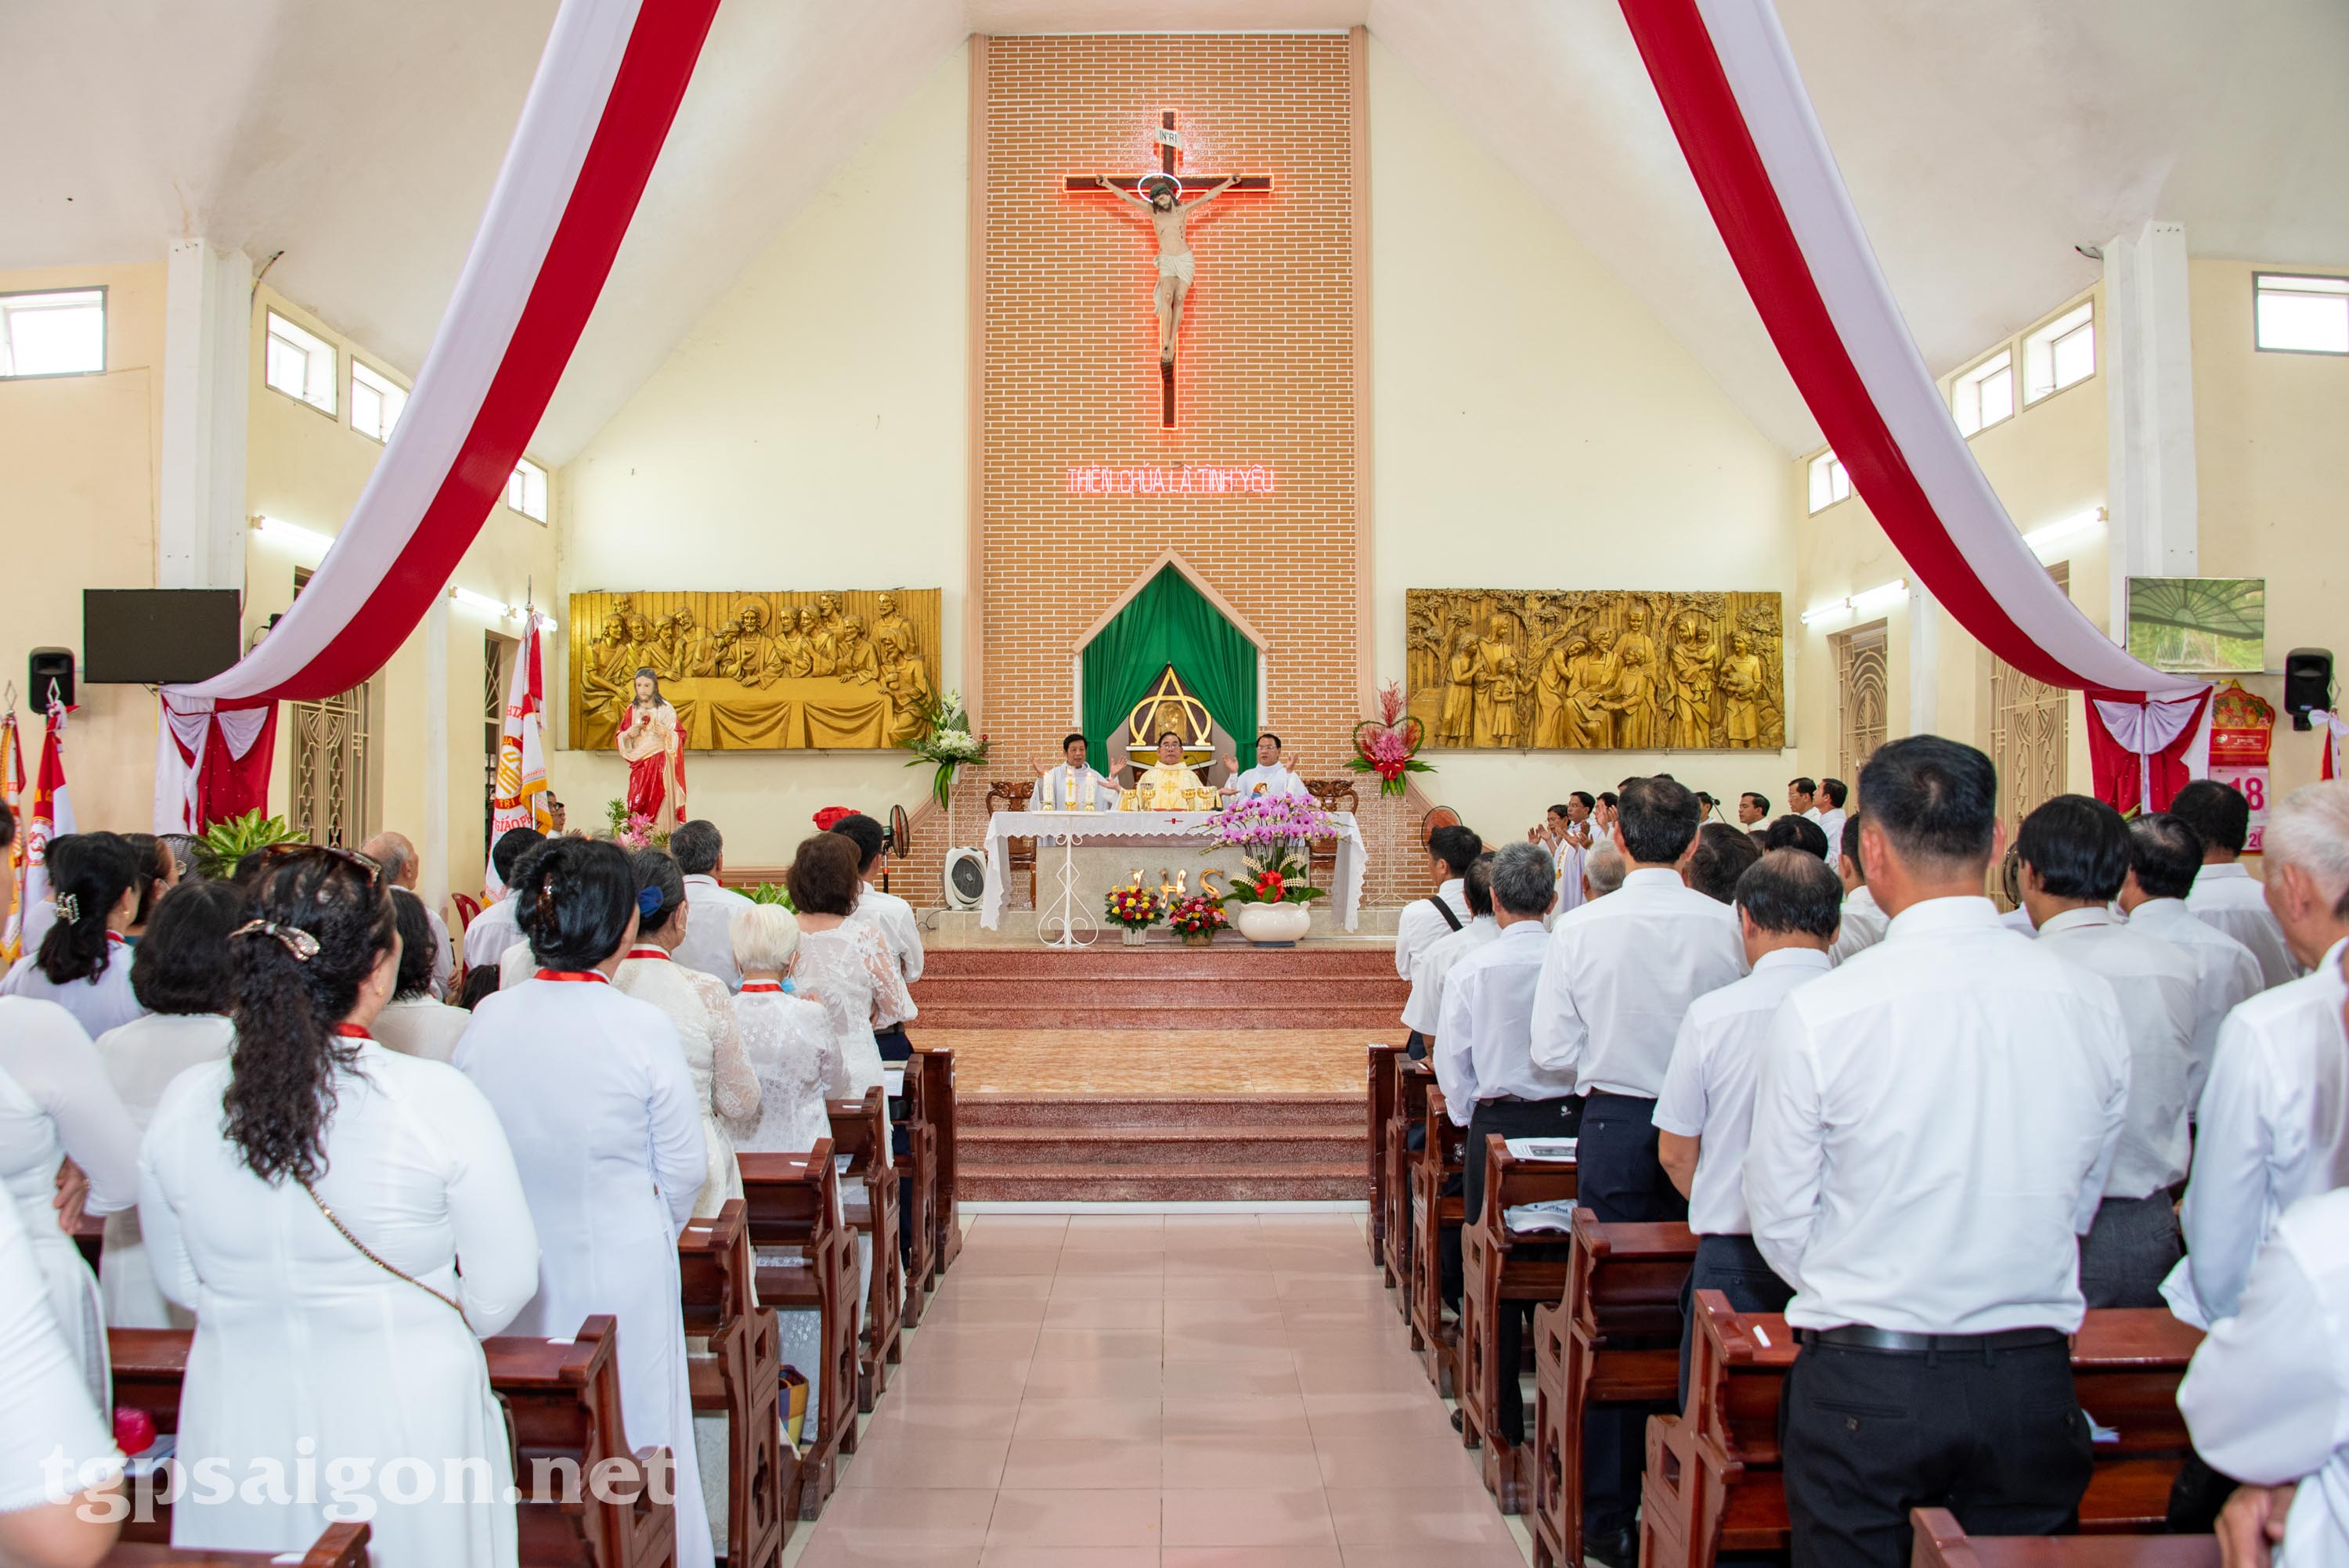 Gia đình Phạt tạ Thánh Tâm Chúa Giêsu Tổng Giáo phận Sài Gòn mừng lễ Thánh Tâm Chúa Giêsu 2022